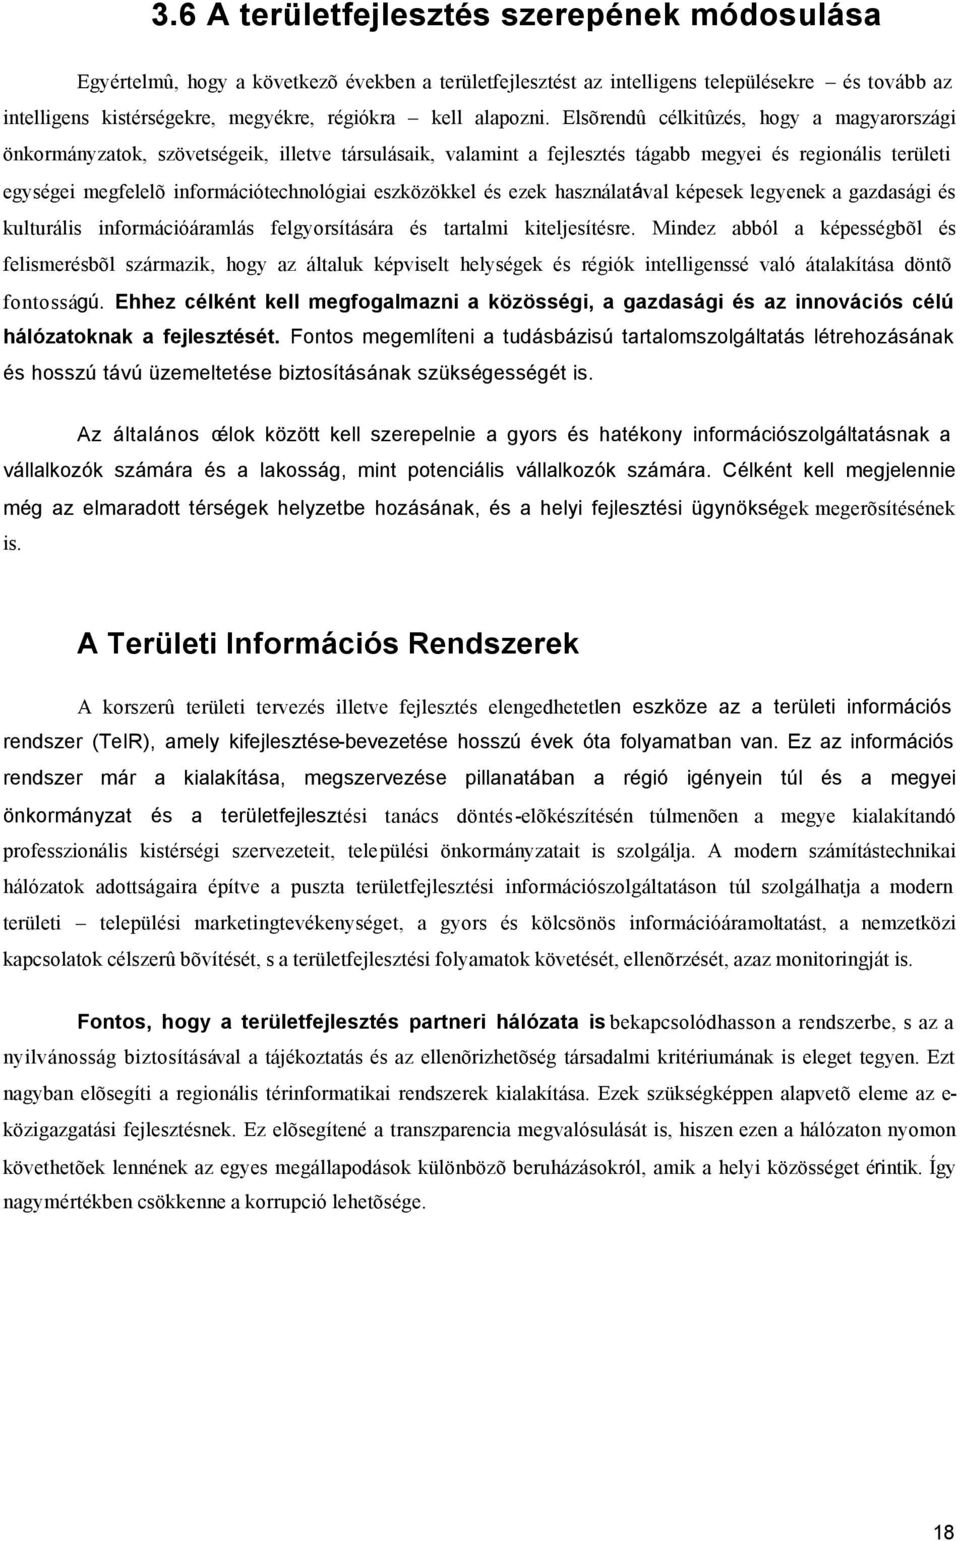 Elsõrendû célkitûzés, hogy a magyarországi önkormányzatok, szövetségeik, illetve társulásaik, valamint a fejlesztés tágabb megyei és regionális területi egységei megfelelõ információtechnológiai